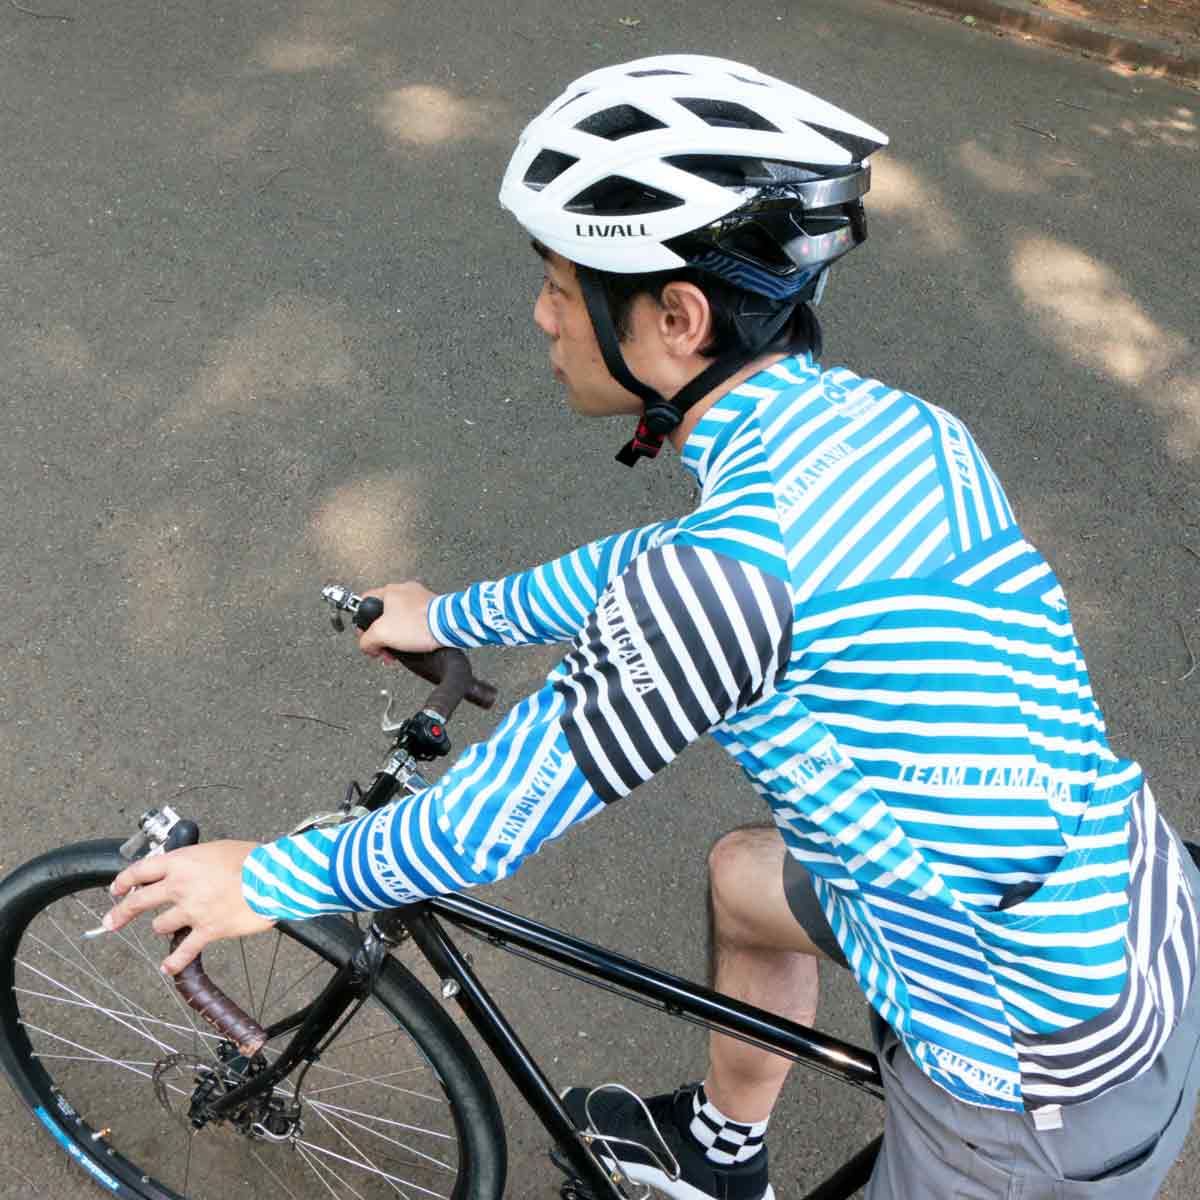 ウインカーを出したり ハンズフリー通話もできる自転車用ヘルメット Livall を試す 価格 Comマガジン